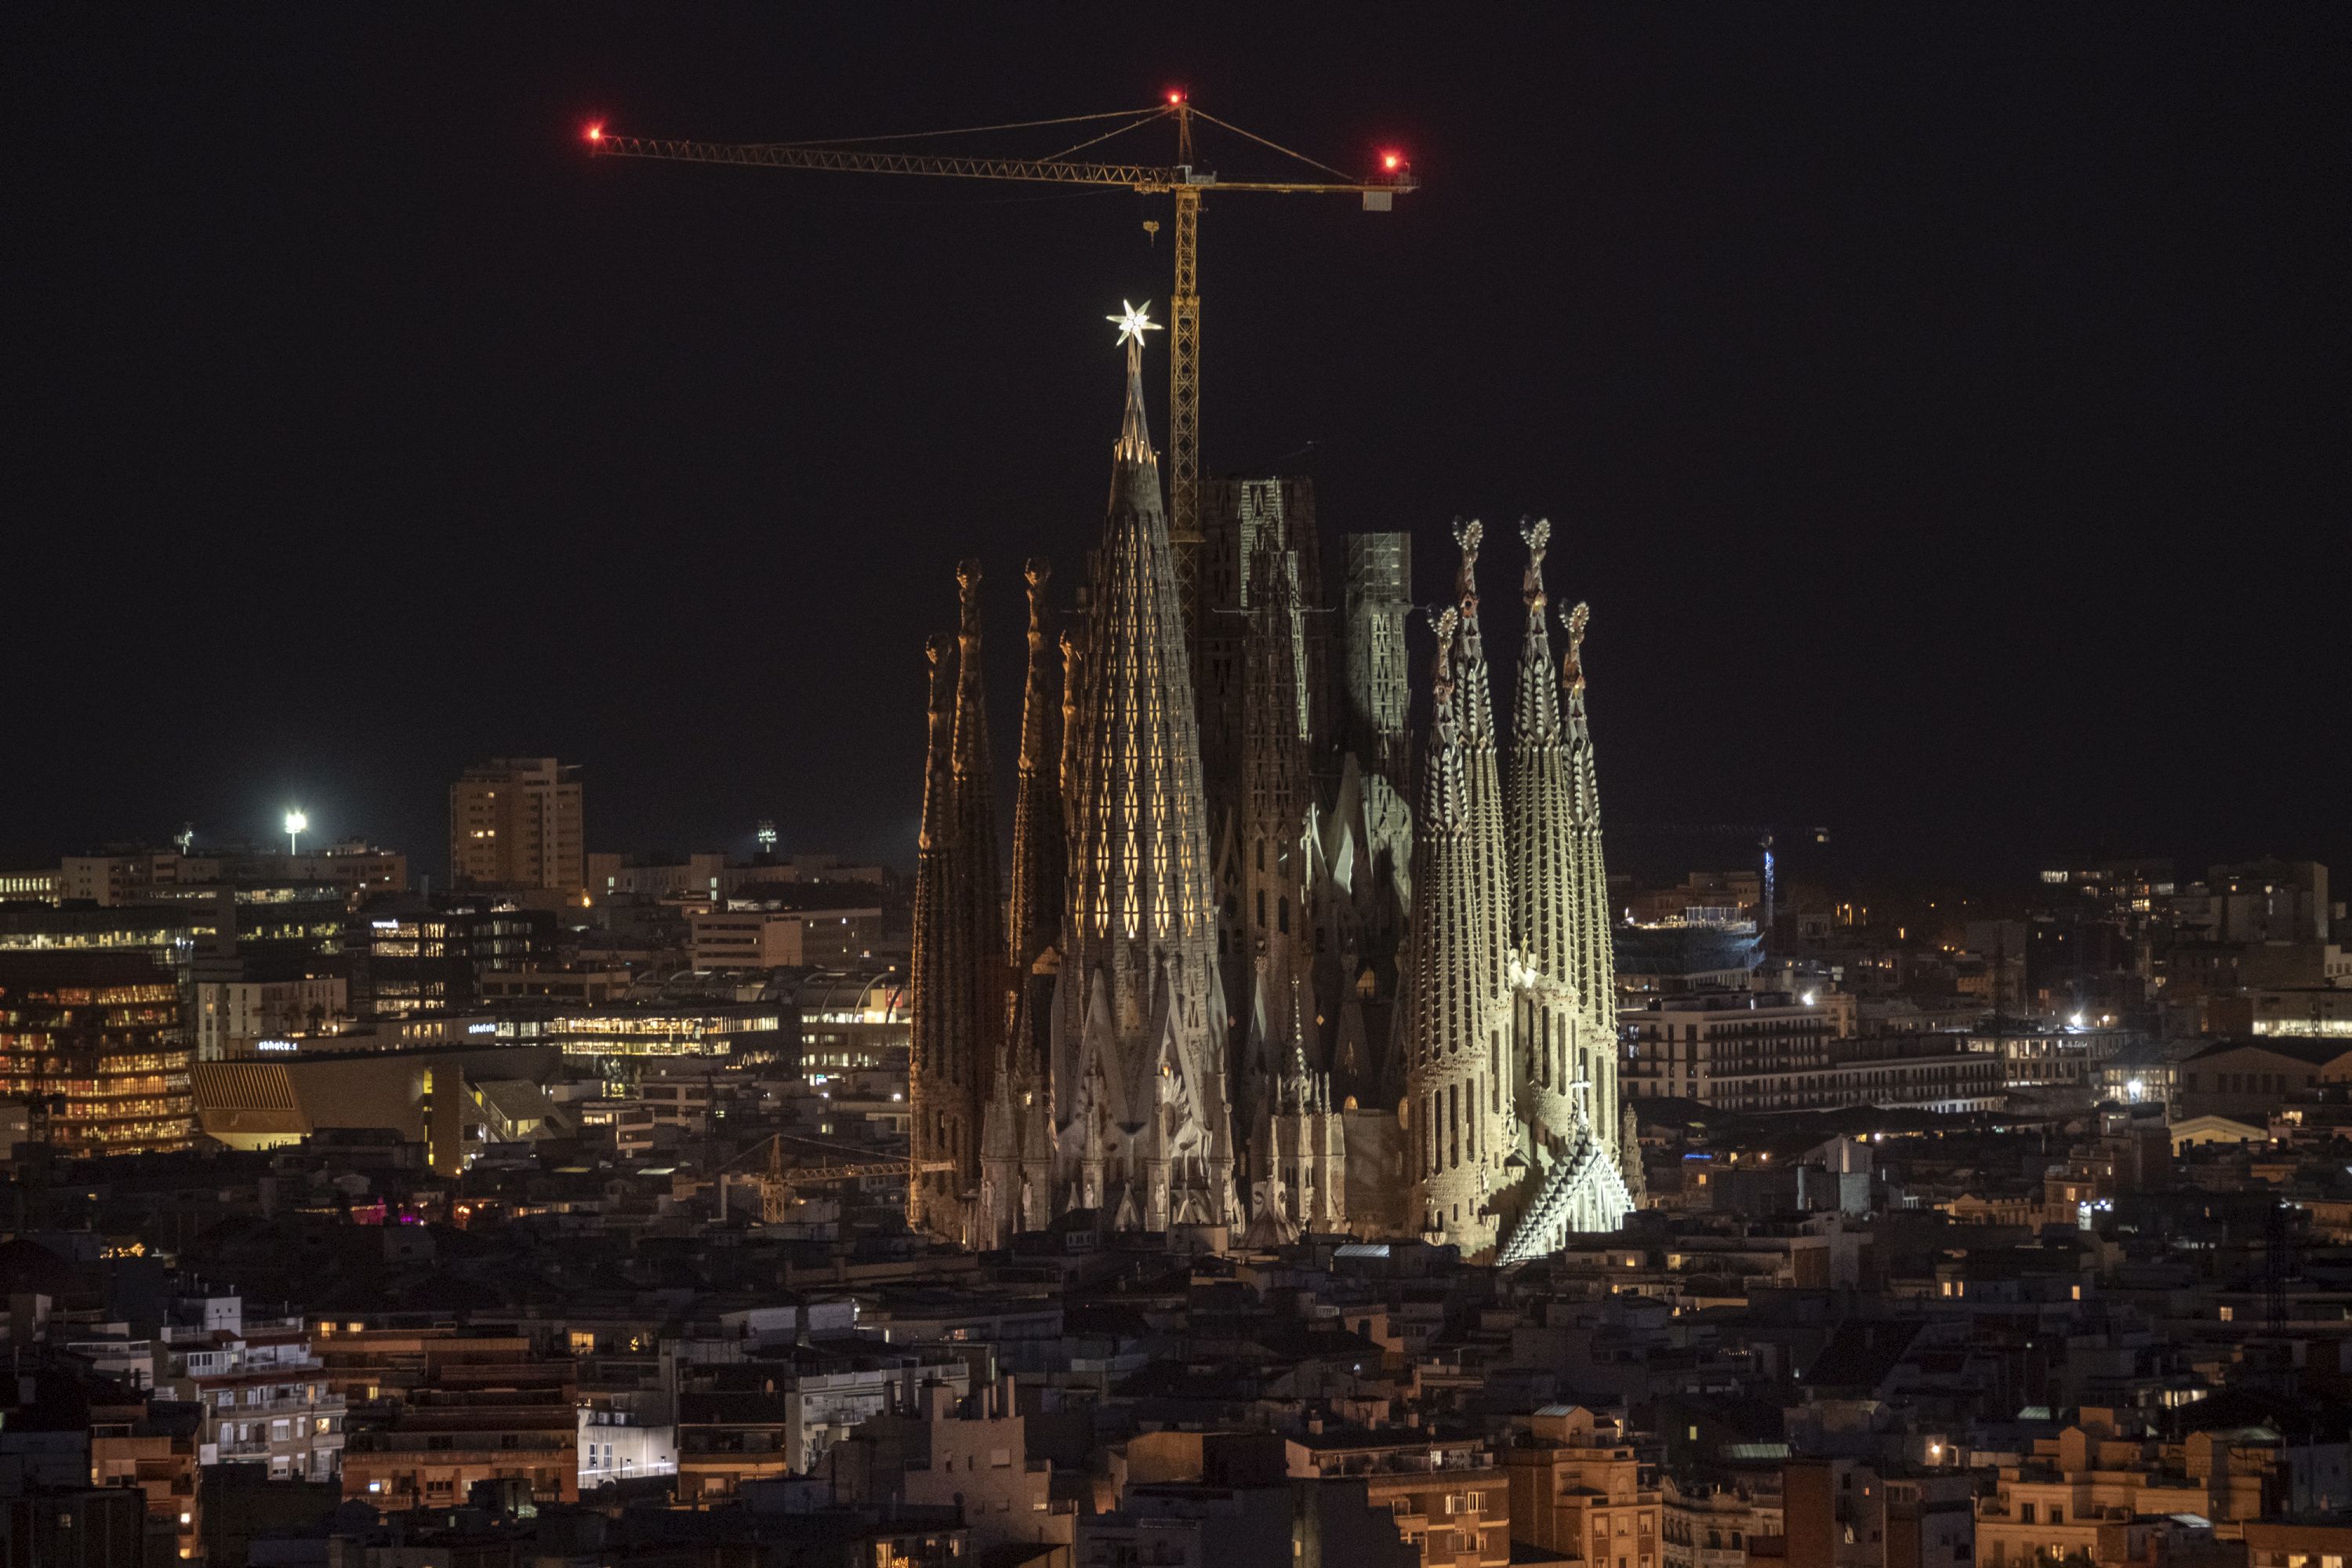 La estrella de la Sagrada Familia iluminará el cielo de Barcelona cada atardecer